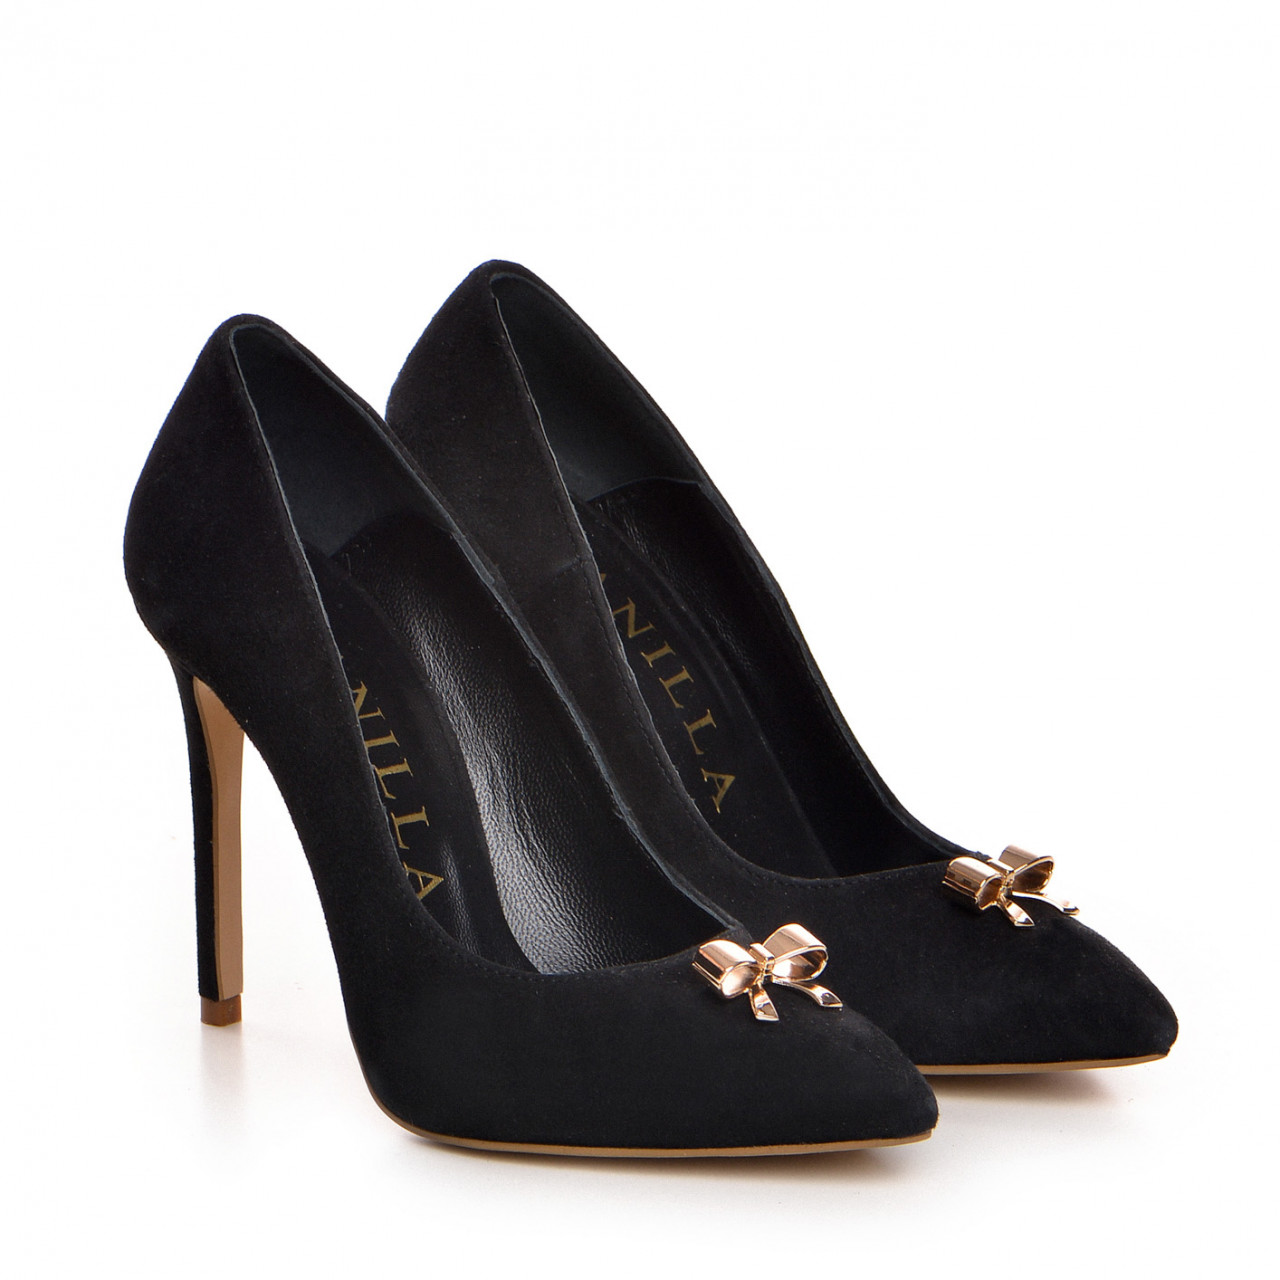 Pantofi Stiletto cu toc subtire, piele naturala intoarsa, neagra, cu accesorii aurii